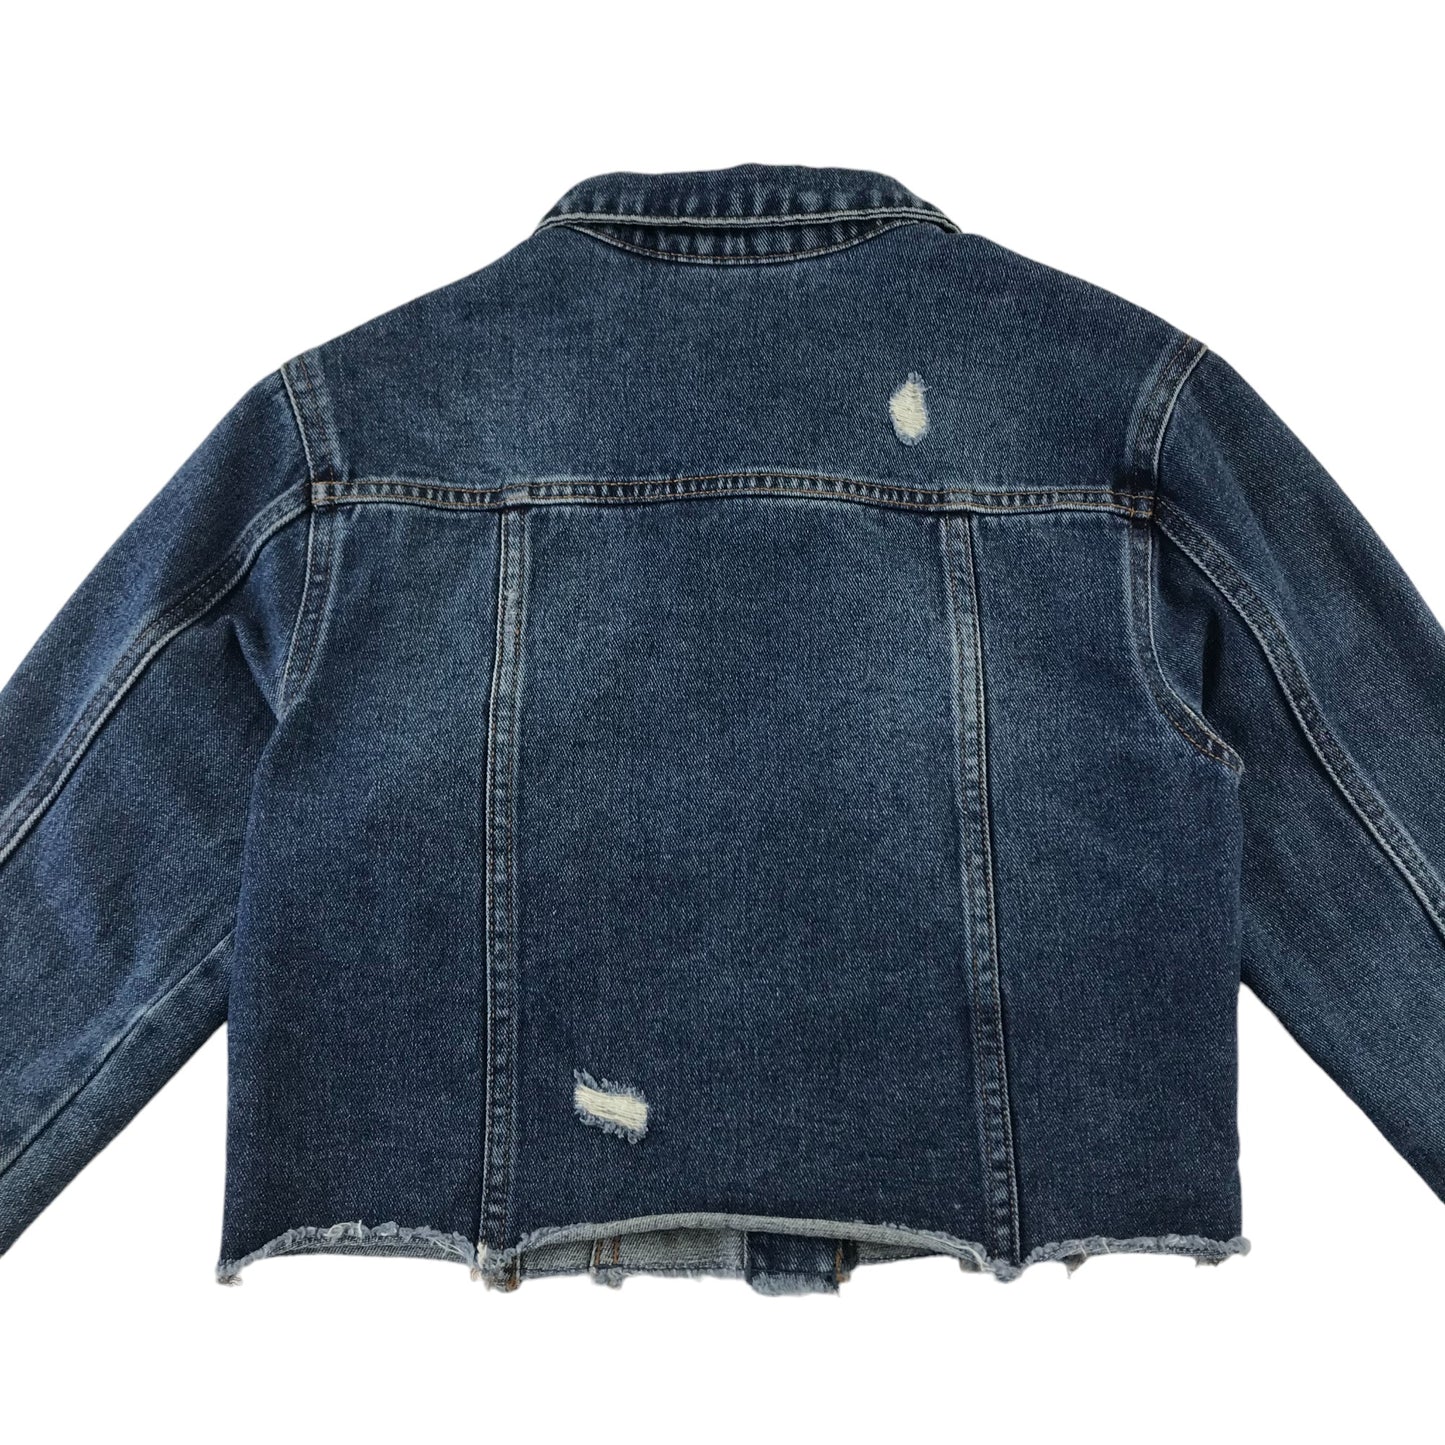 Matalan denim jacket 10-11 years blue cropped cotton